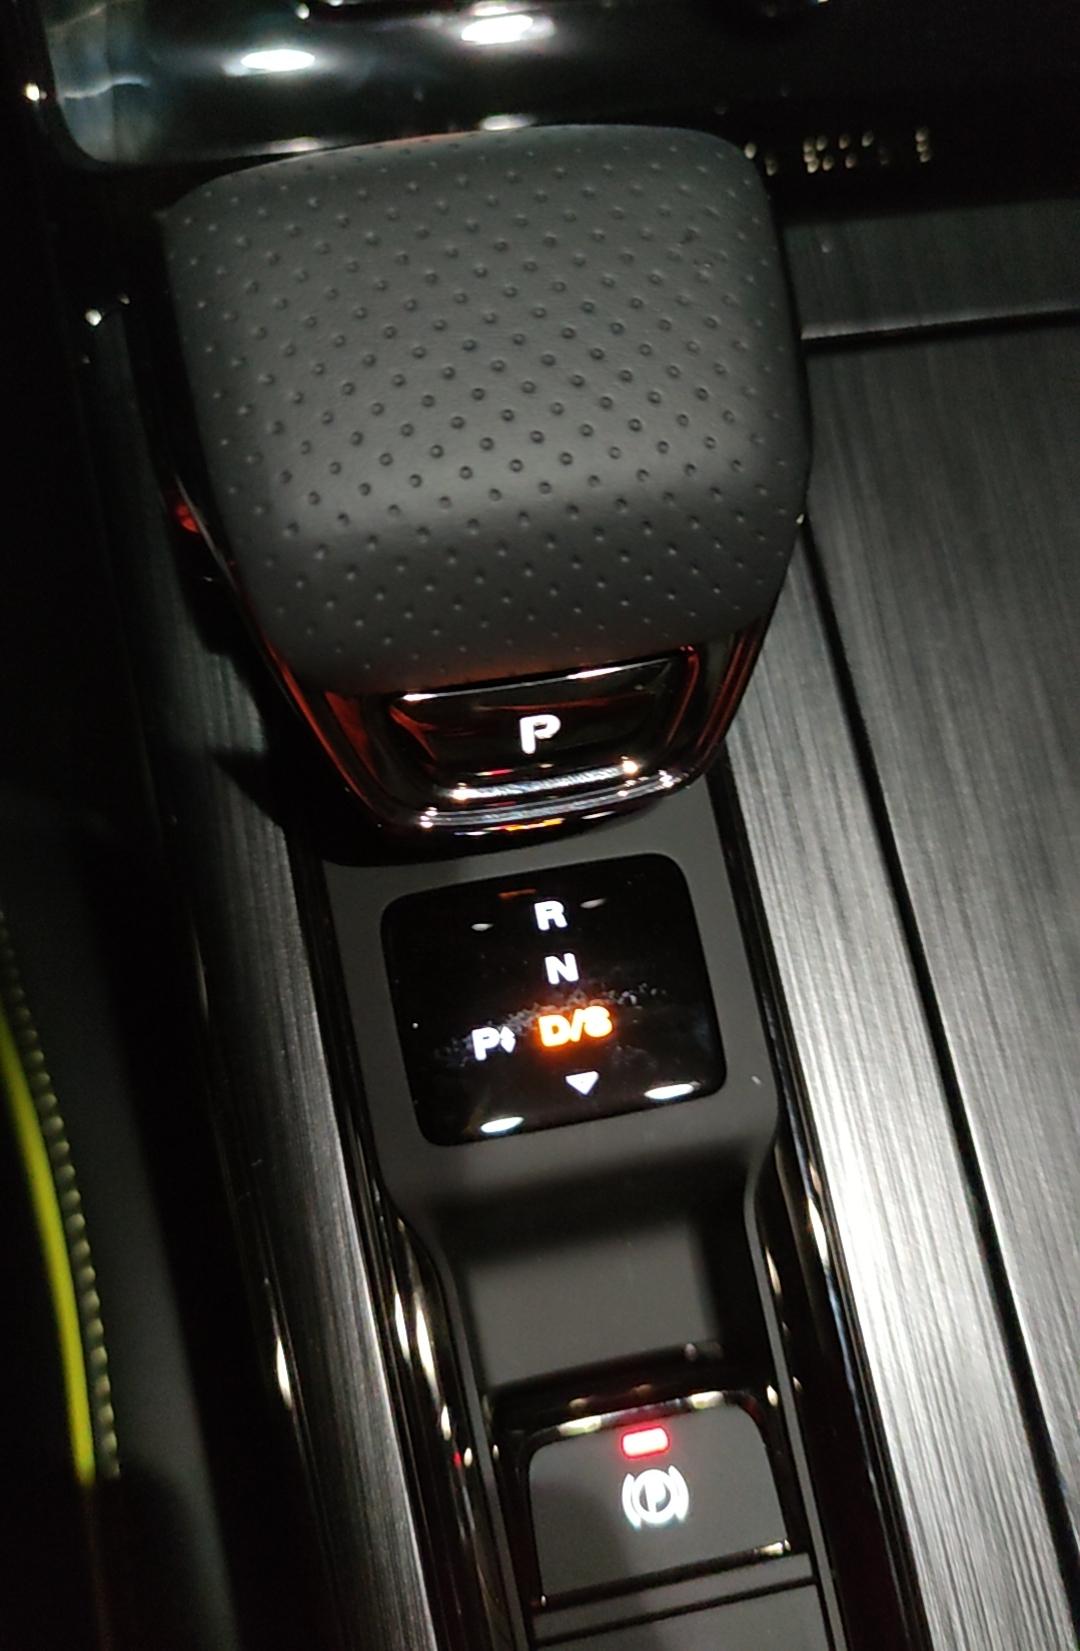 荣威RX5 怎么样知道自己挂的是，手动或者是自动挡模式。今天发现踩油门不怎么走。问销售说我是挂到手动模式了。怎么分辨啊。